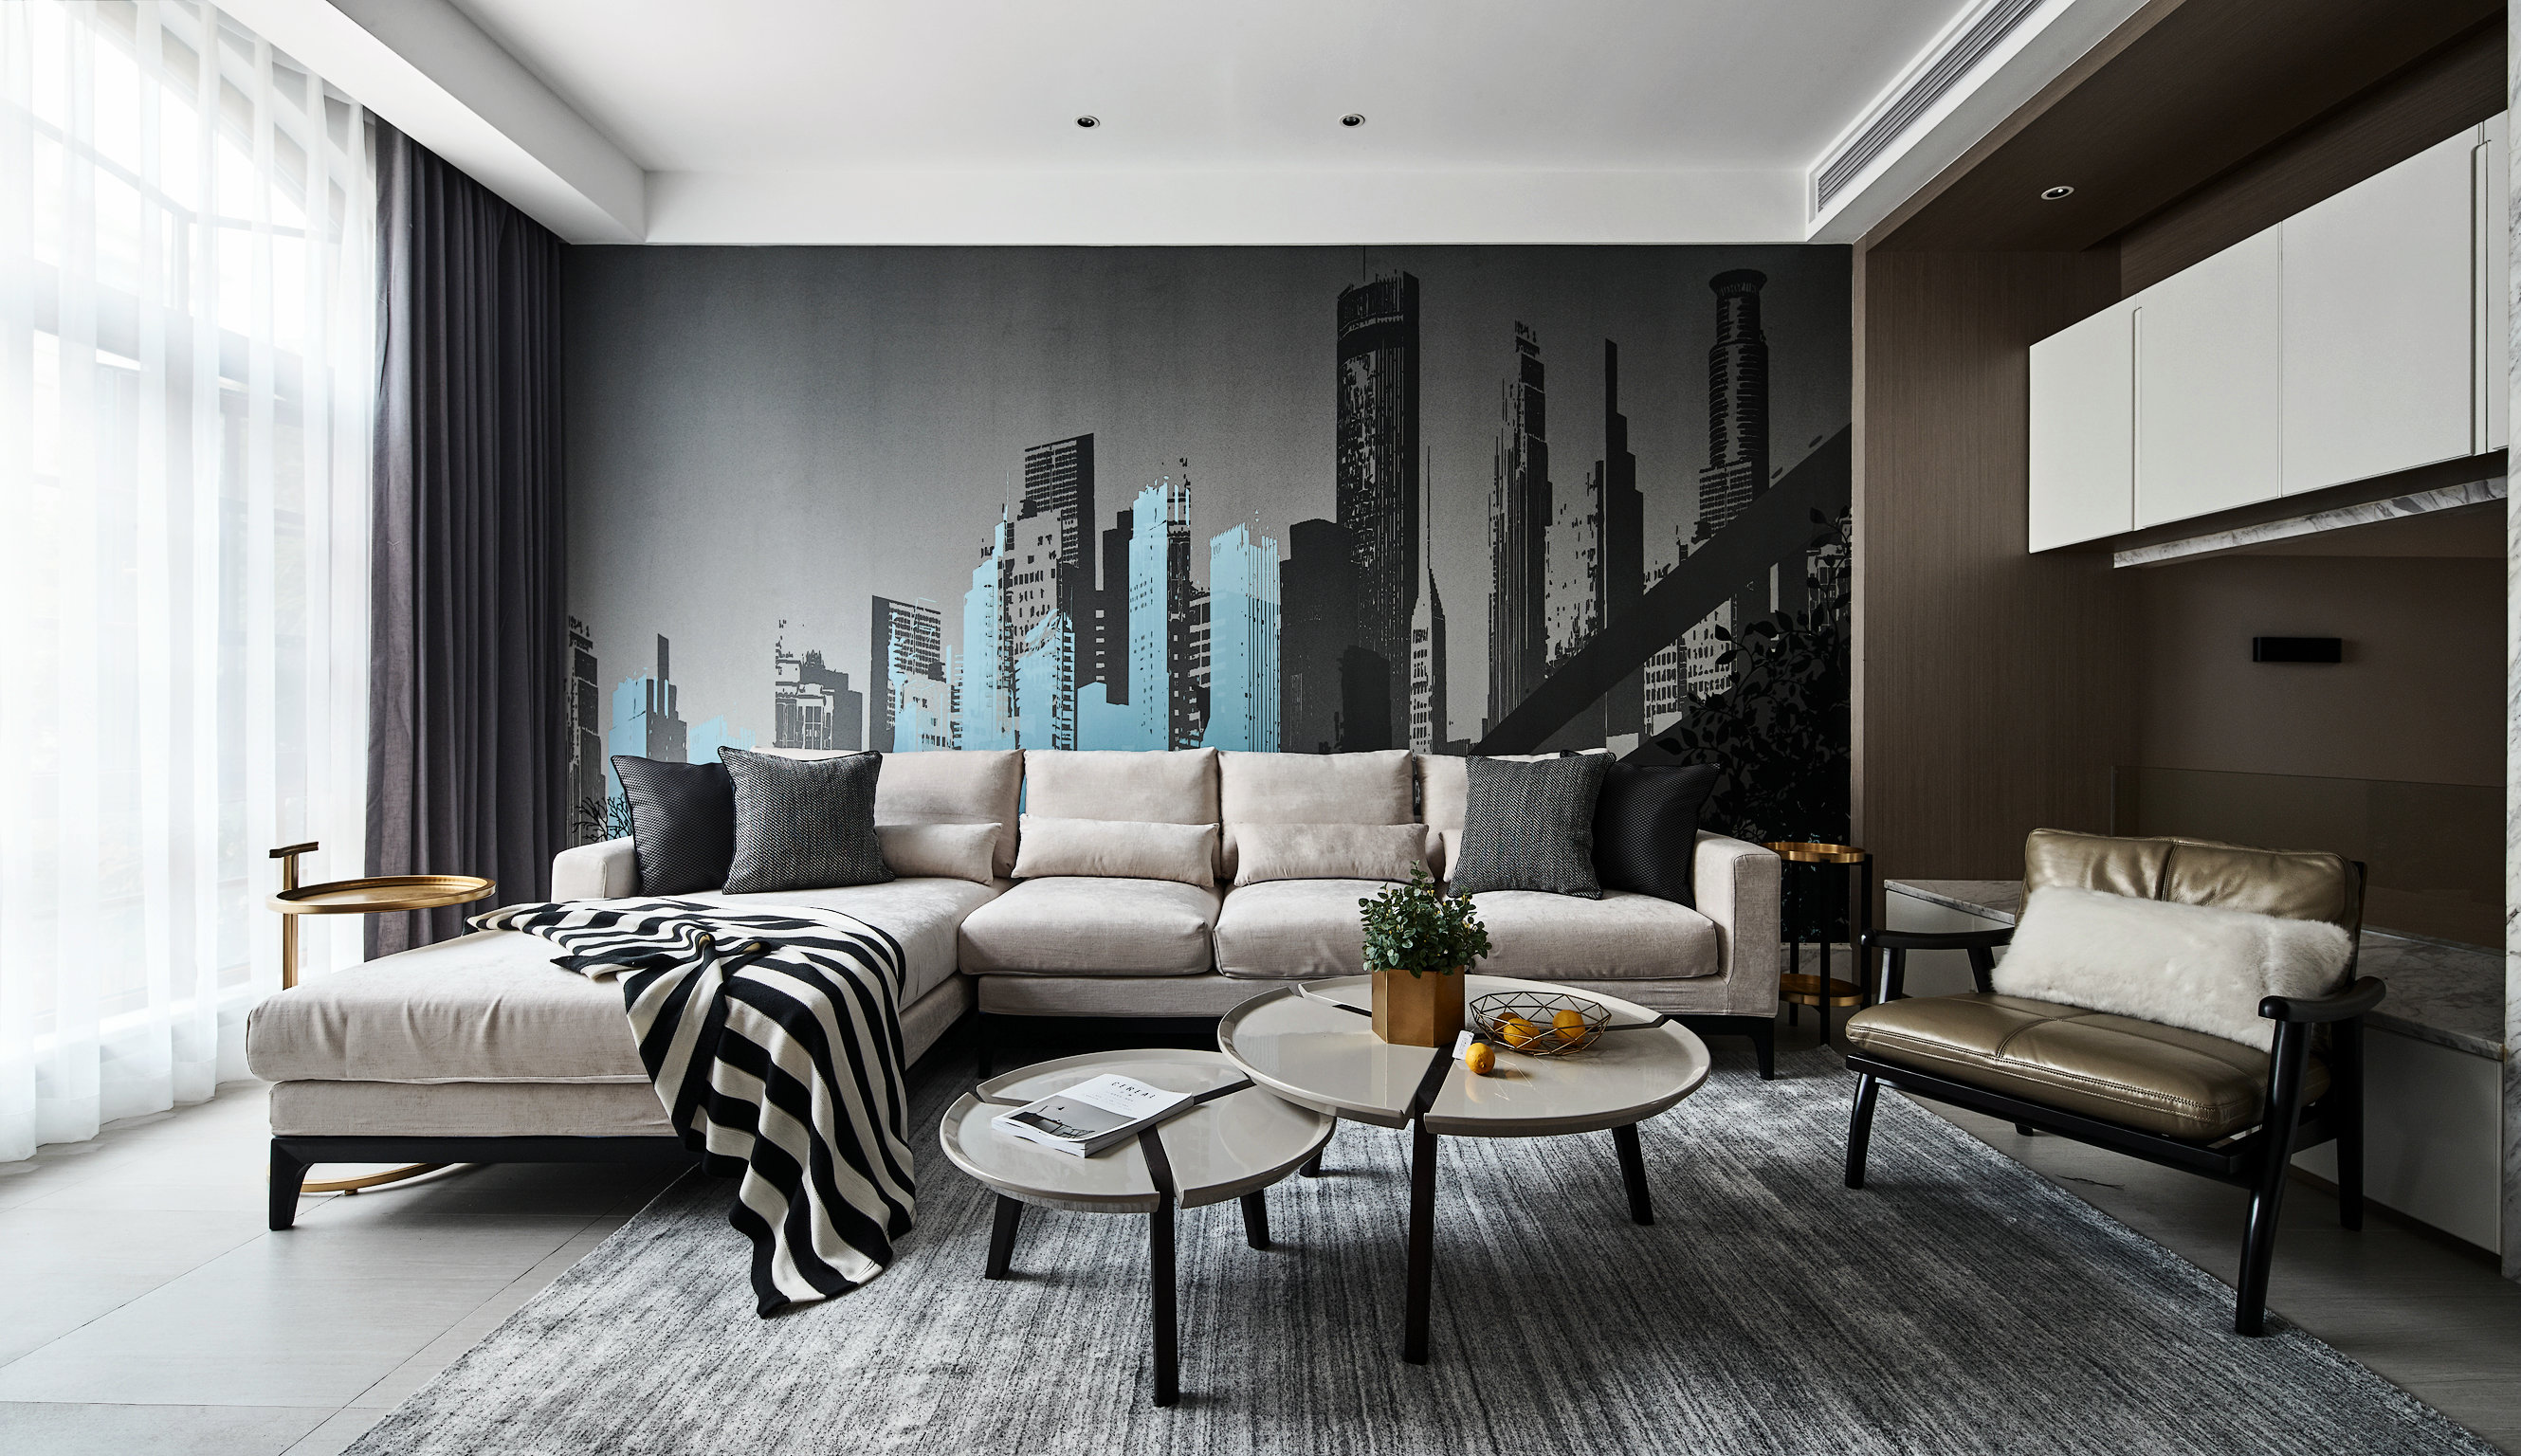 客厅以灰白色为基调，空间俊逸潇洒，米色布艺沙发搭配小型茶几，呈现出干练精简的空间氛围。